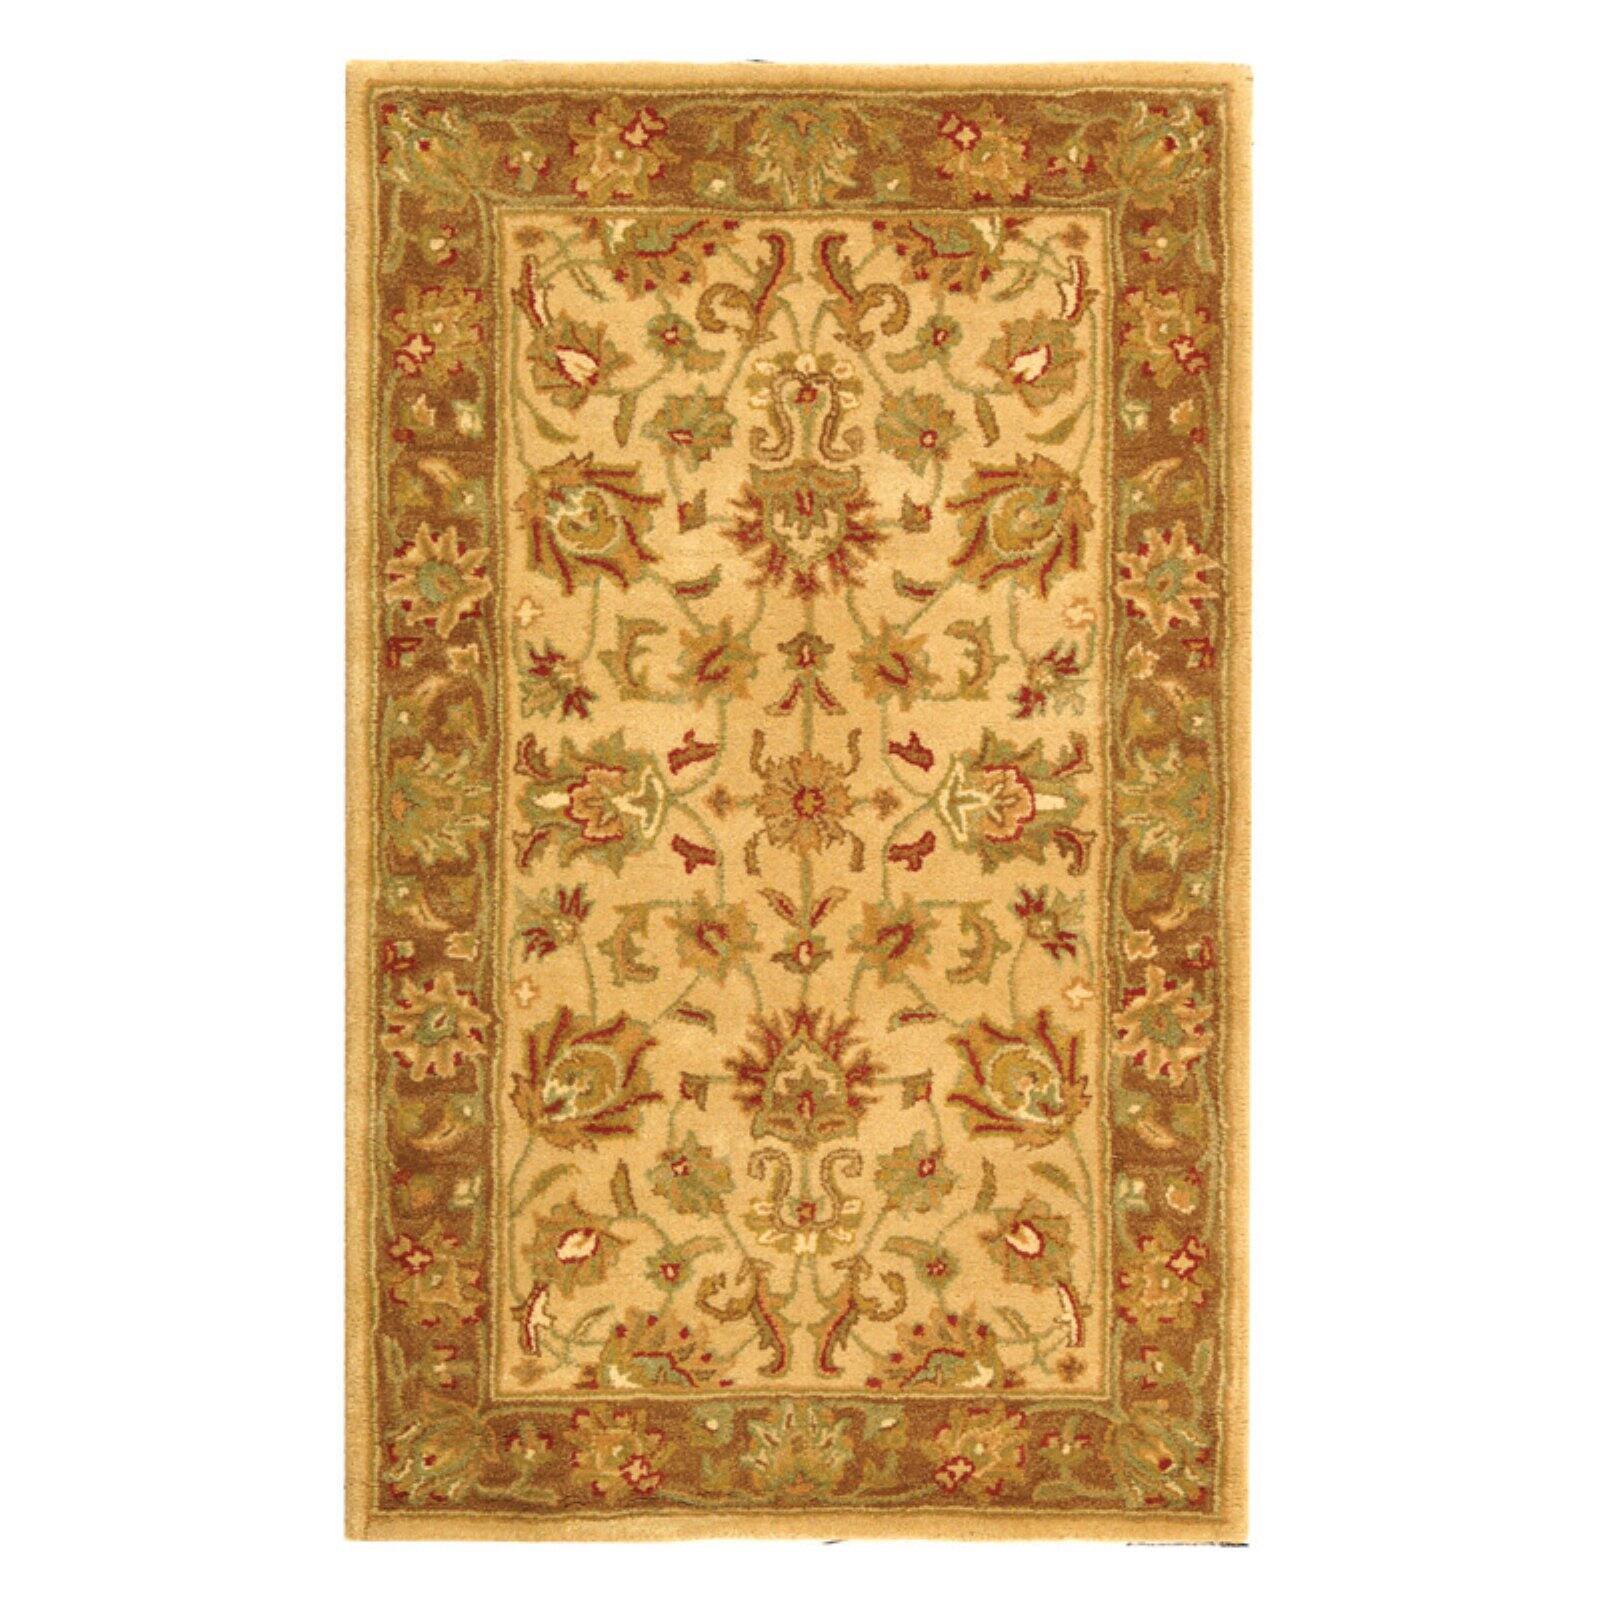 SAFAVIEH Heritage Regis Traditional Wool Runner Rug, Ivory/Brown, 2'3" x 12' - image 5 of 9